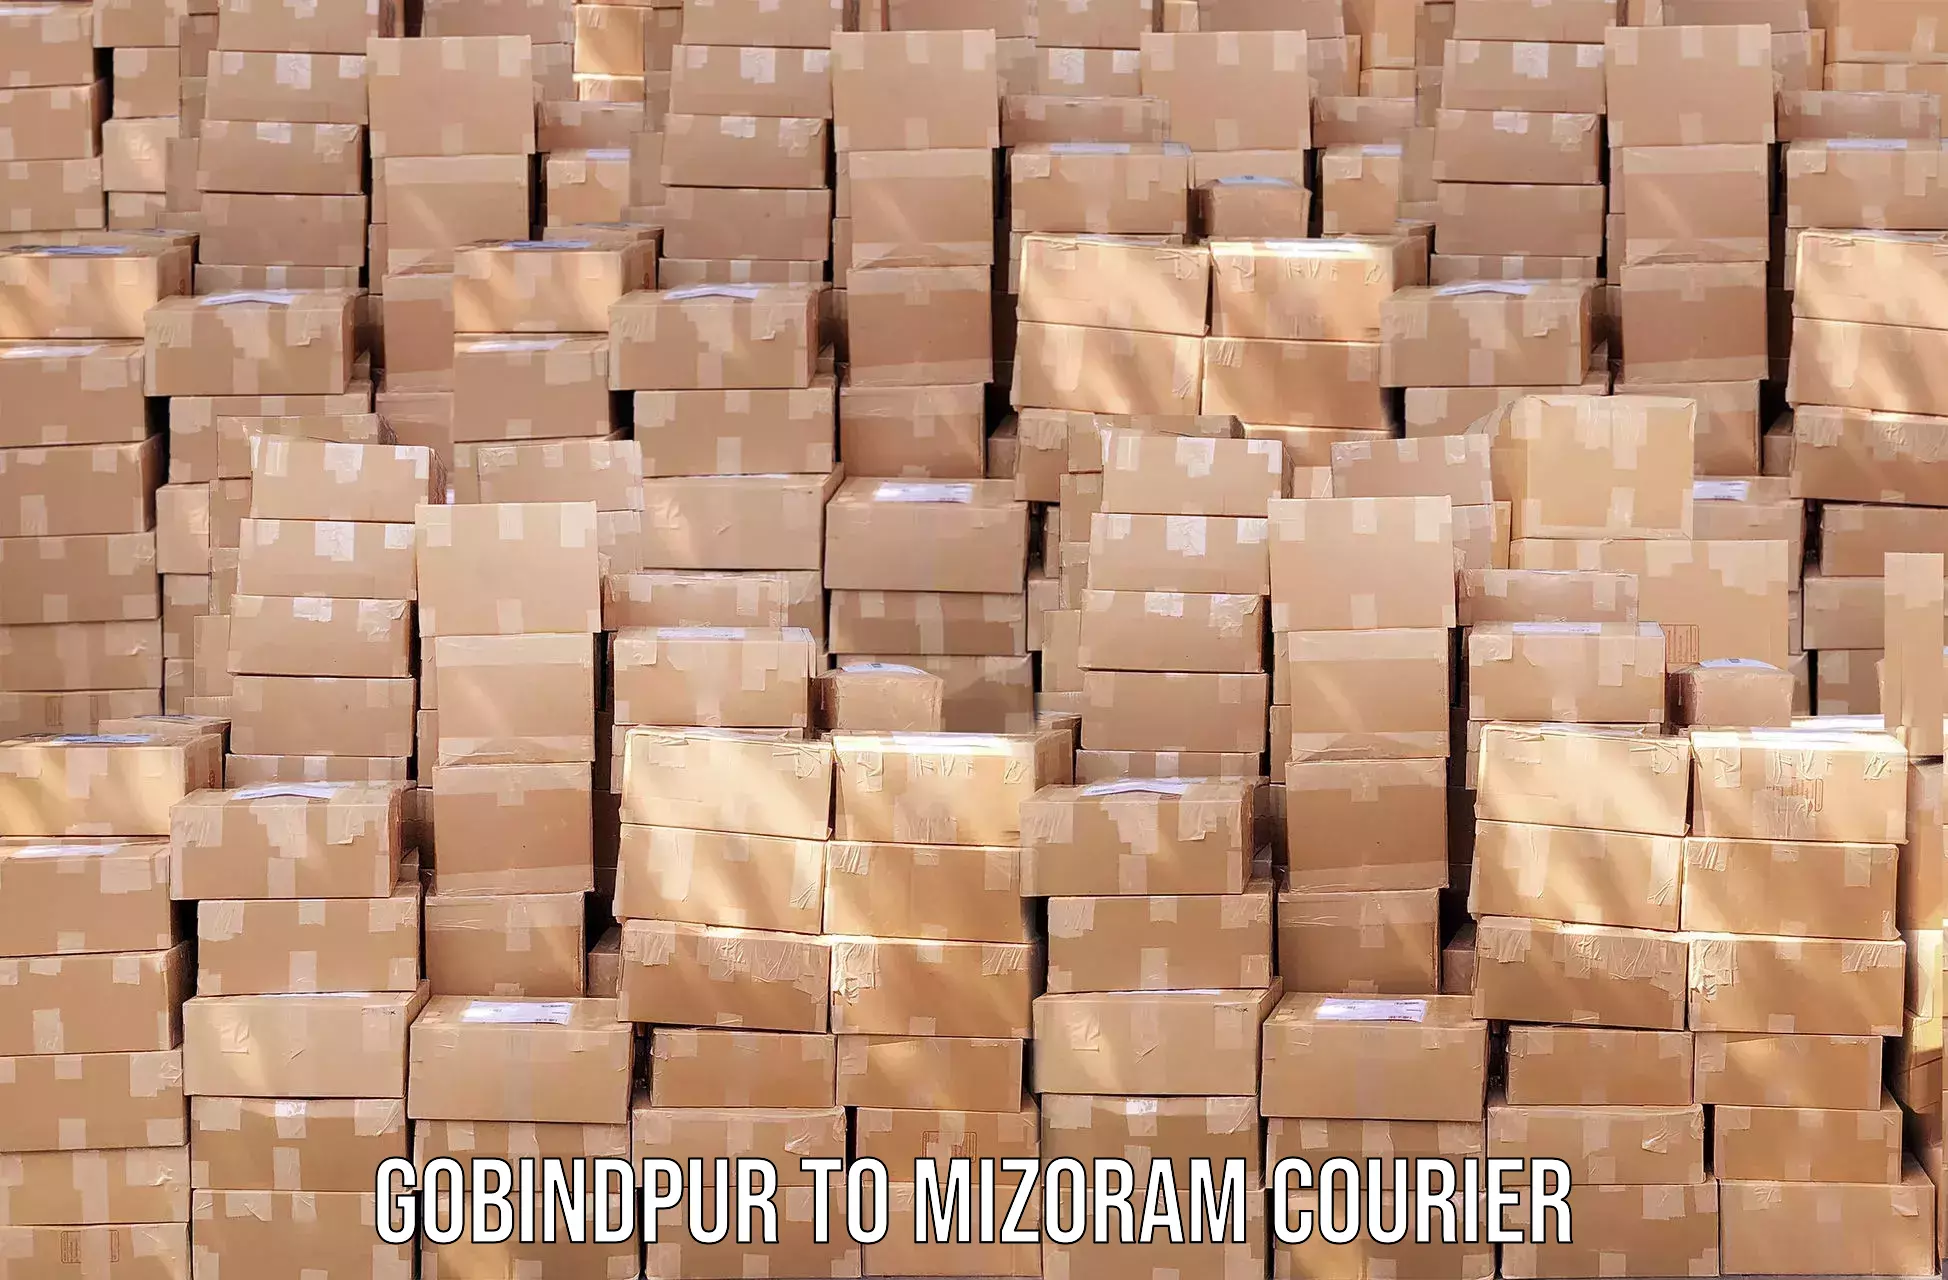 Customer-centric shipping Gobindpur to Darlawn